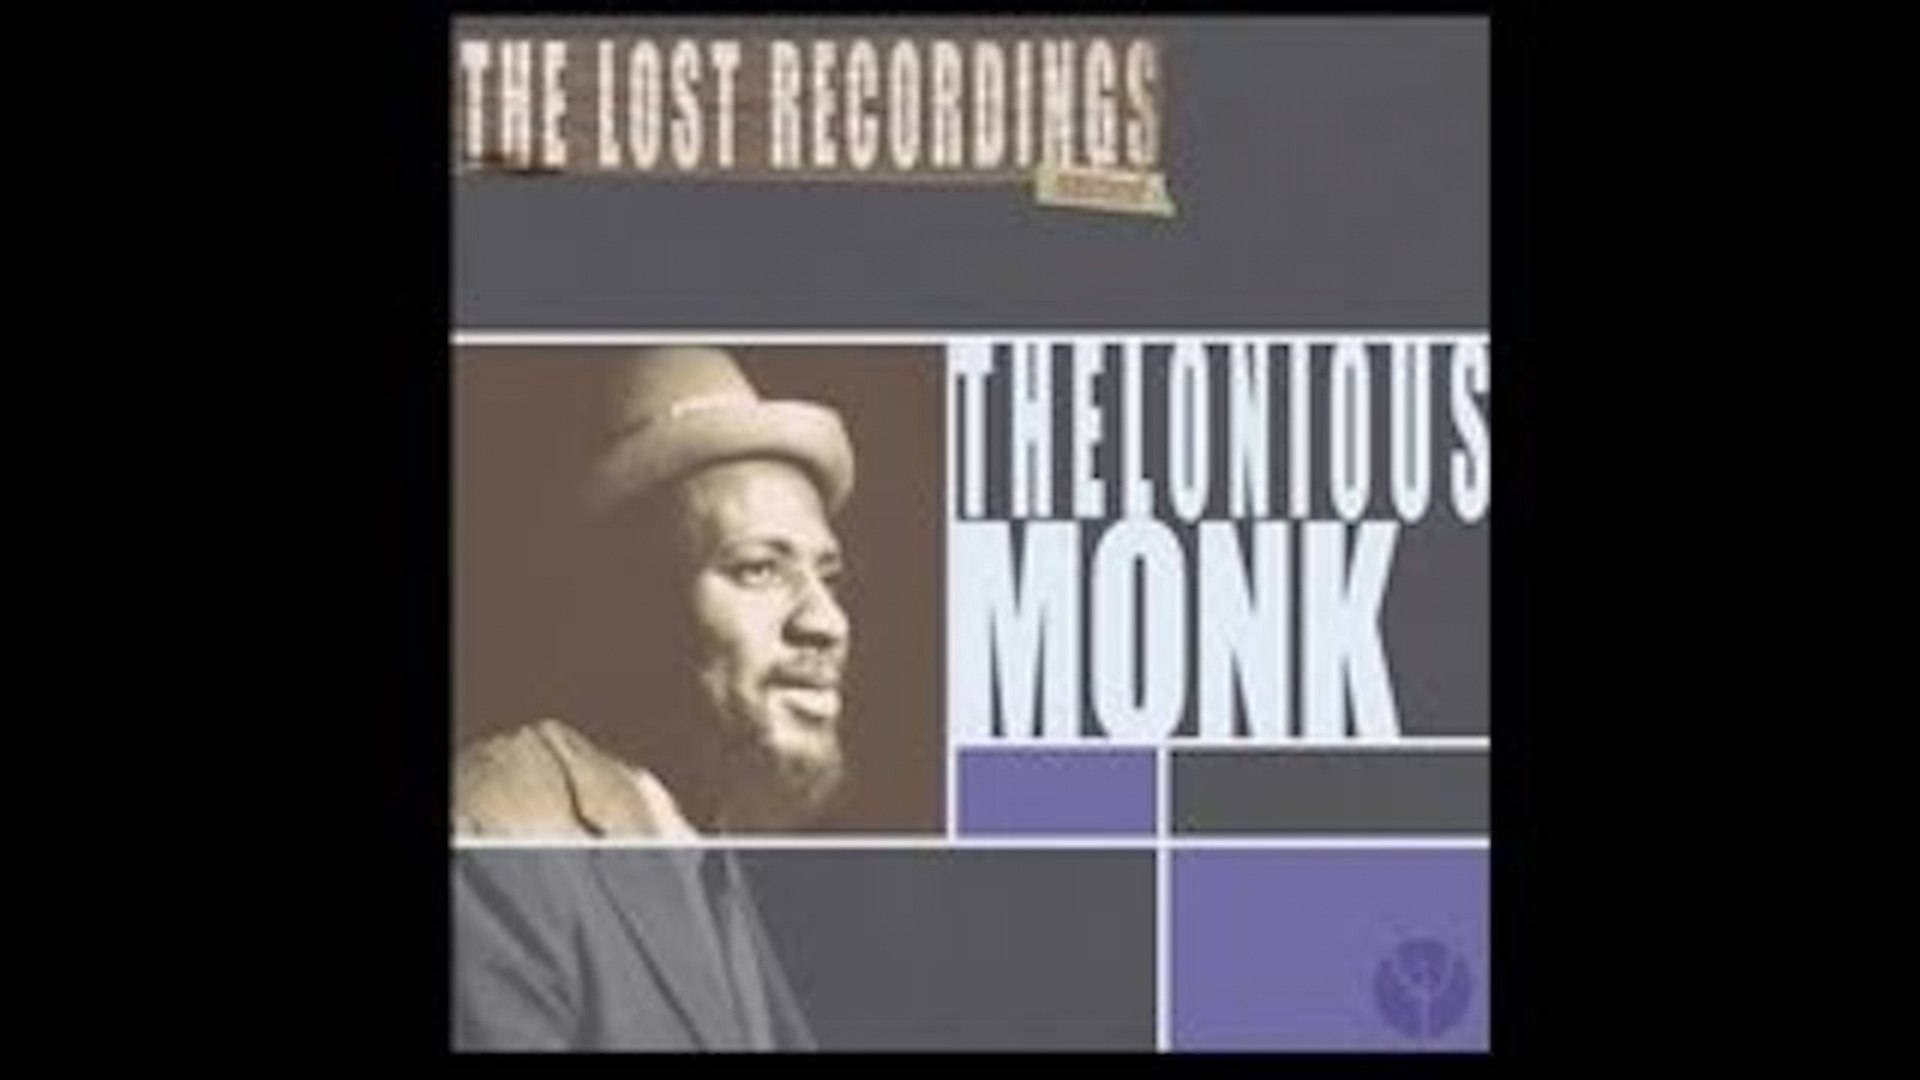 Albumdelle Registrazioni Perse Di Thelonious Monk Sfondo